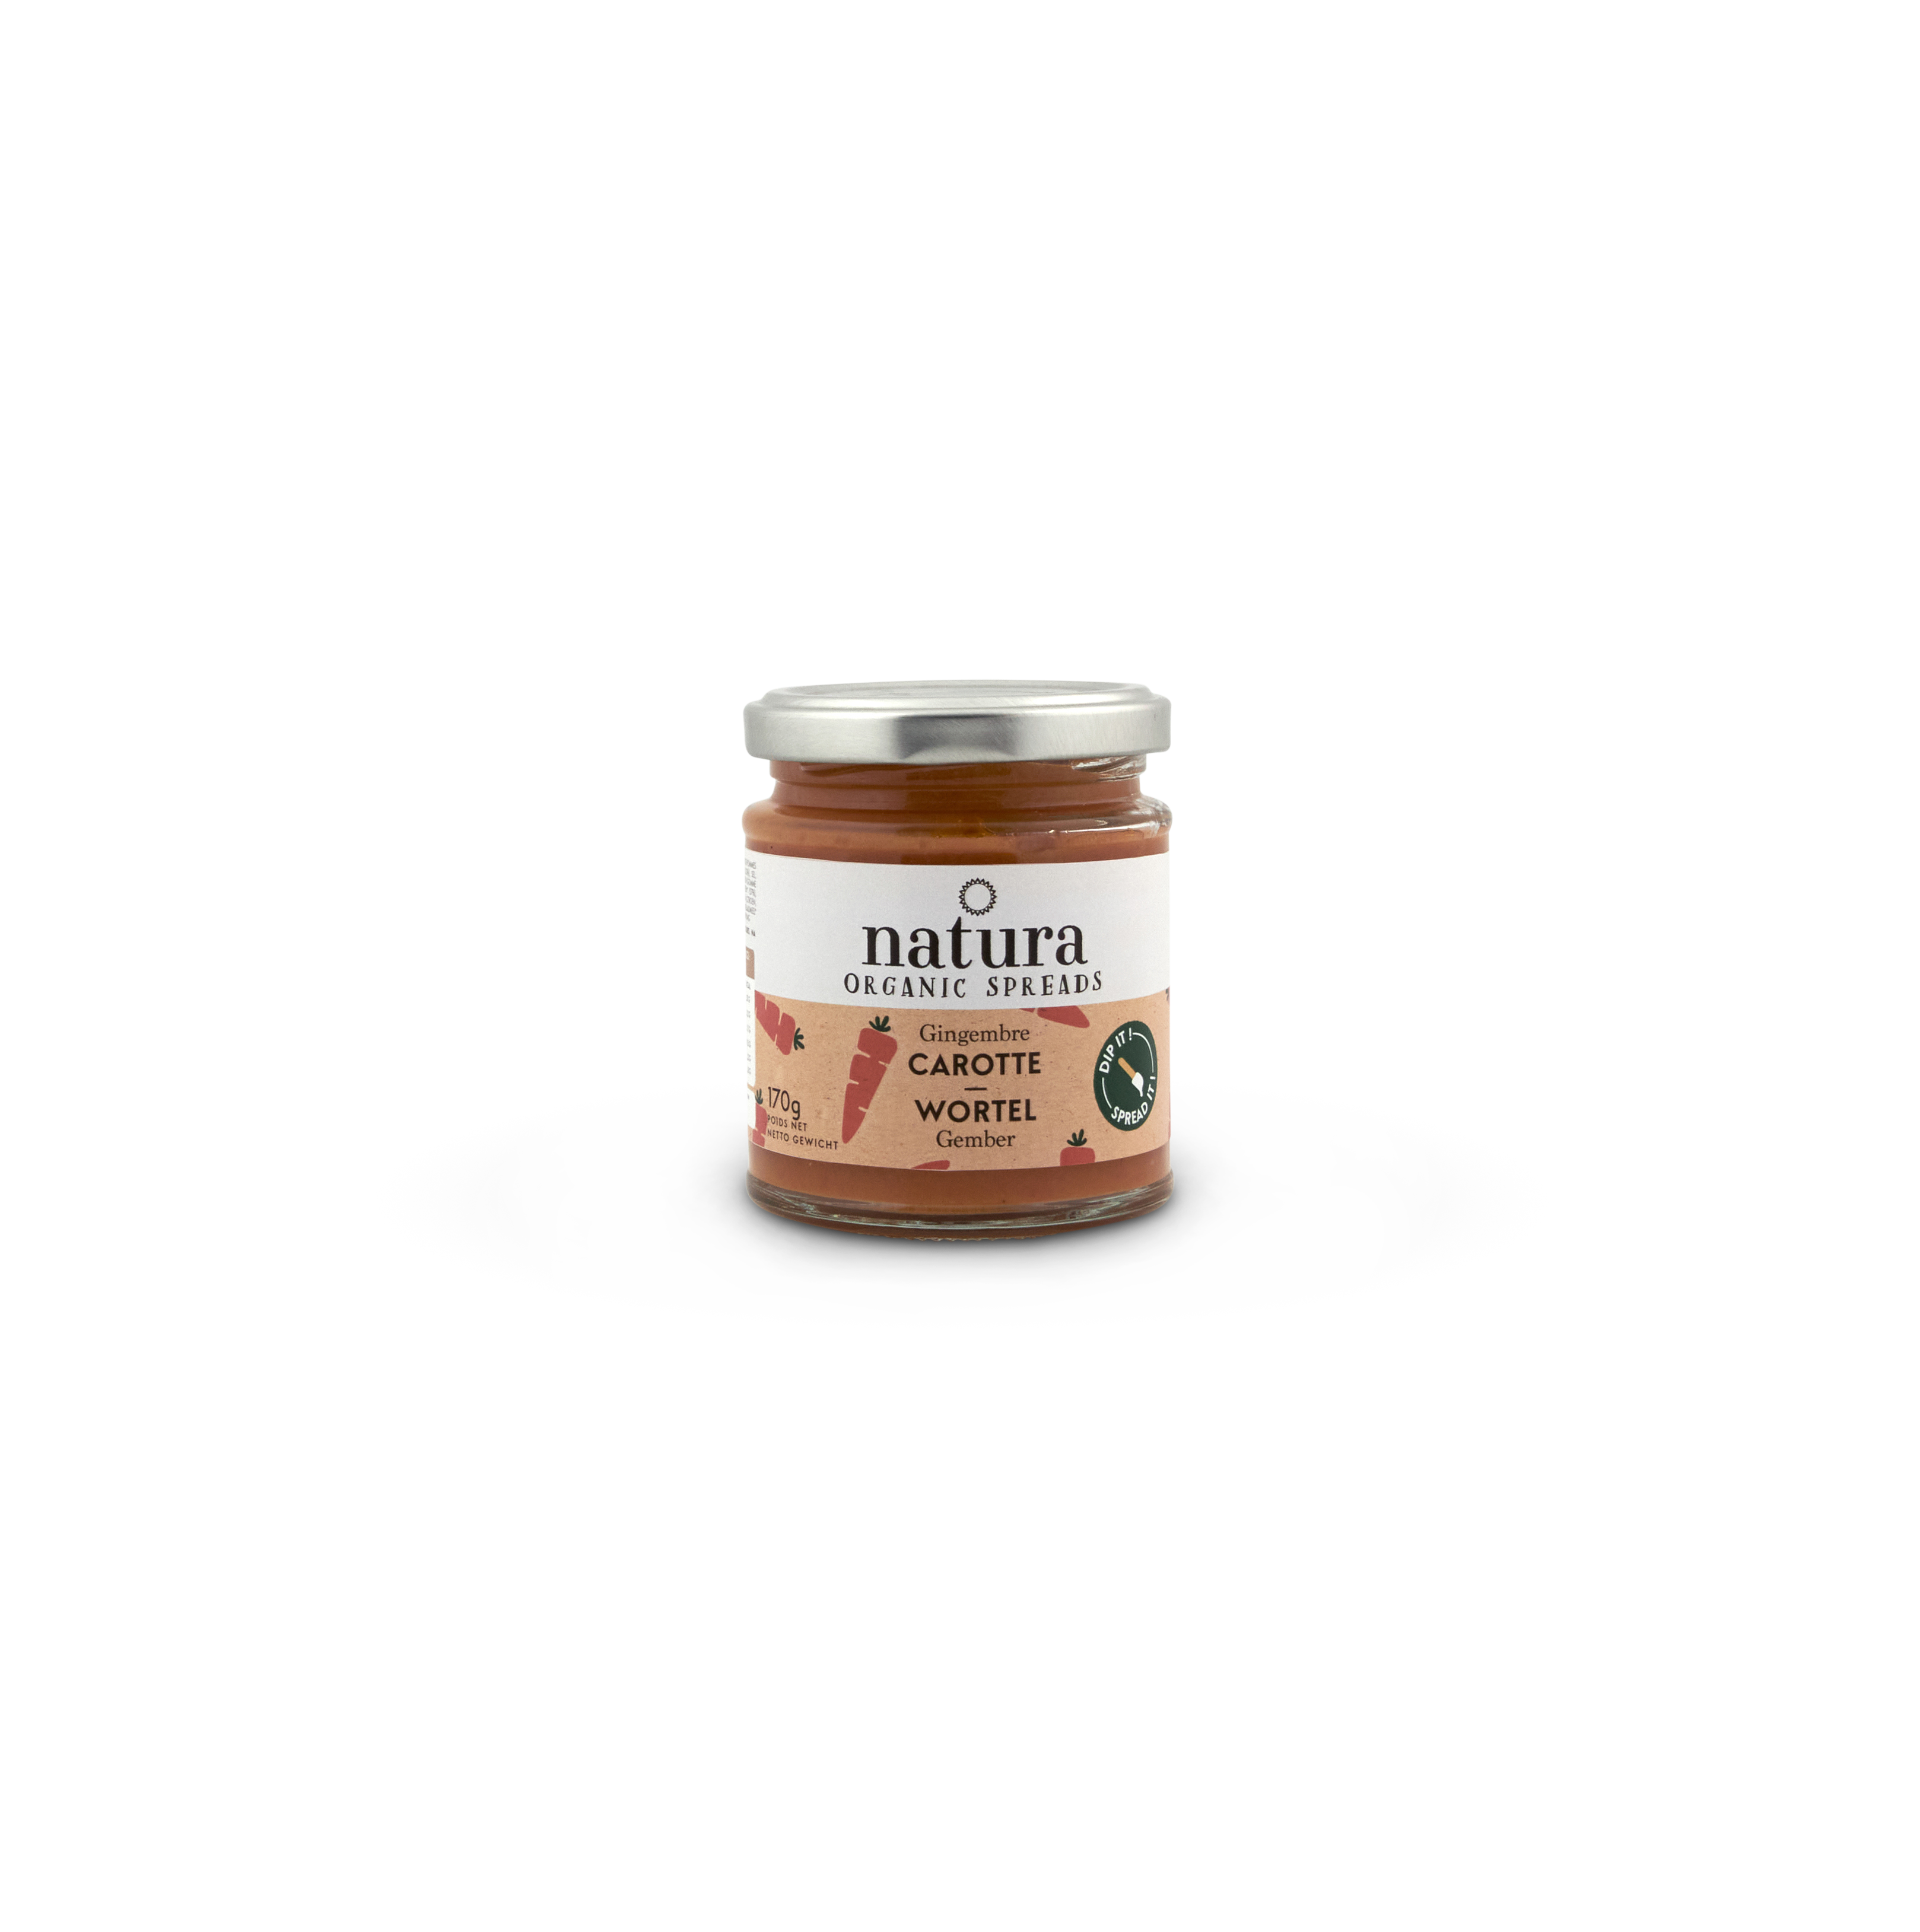 Natura Spread wortel-gember bio 170g